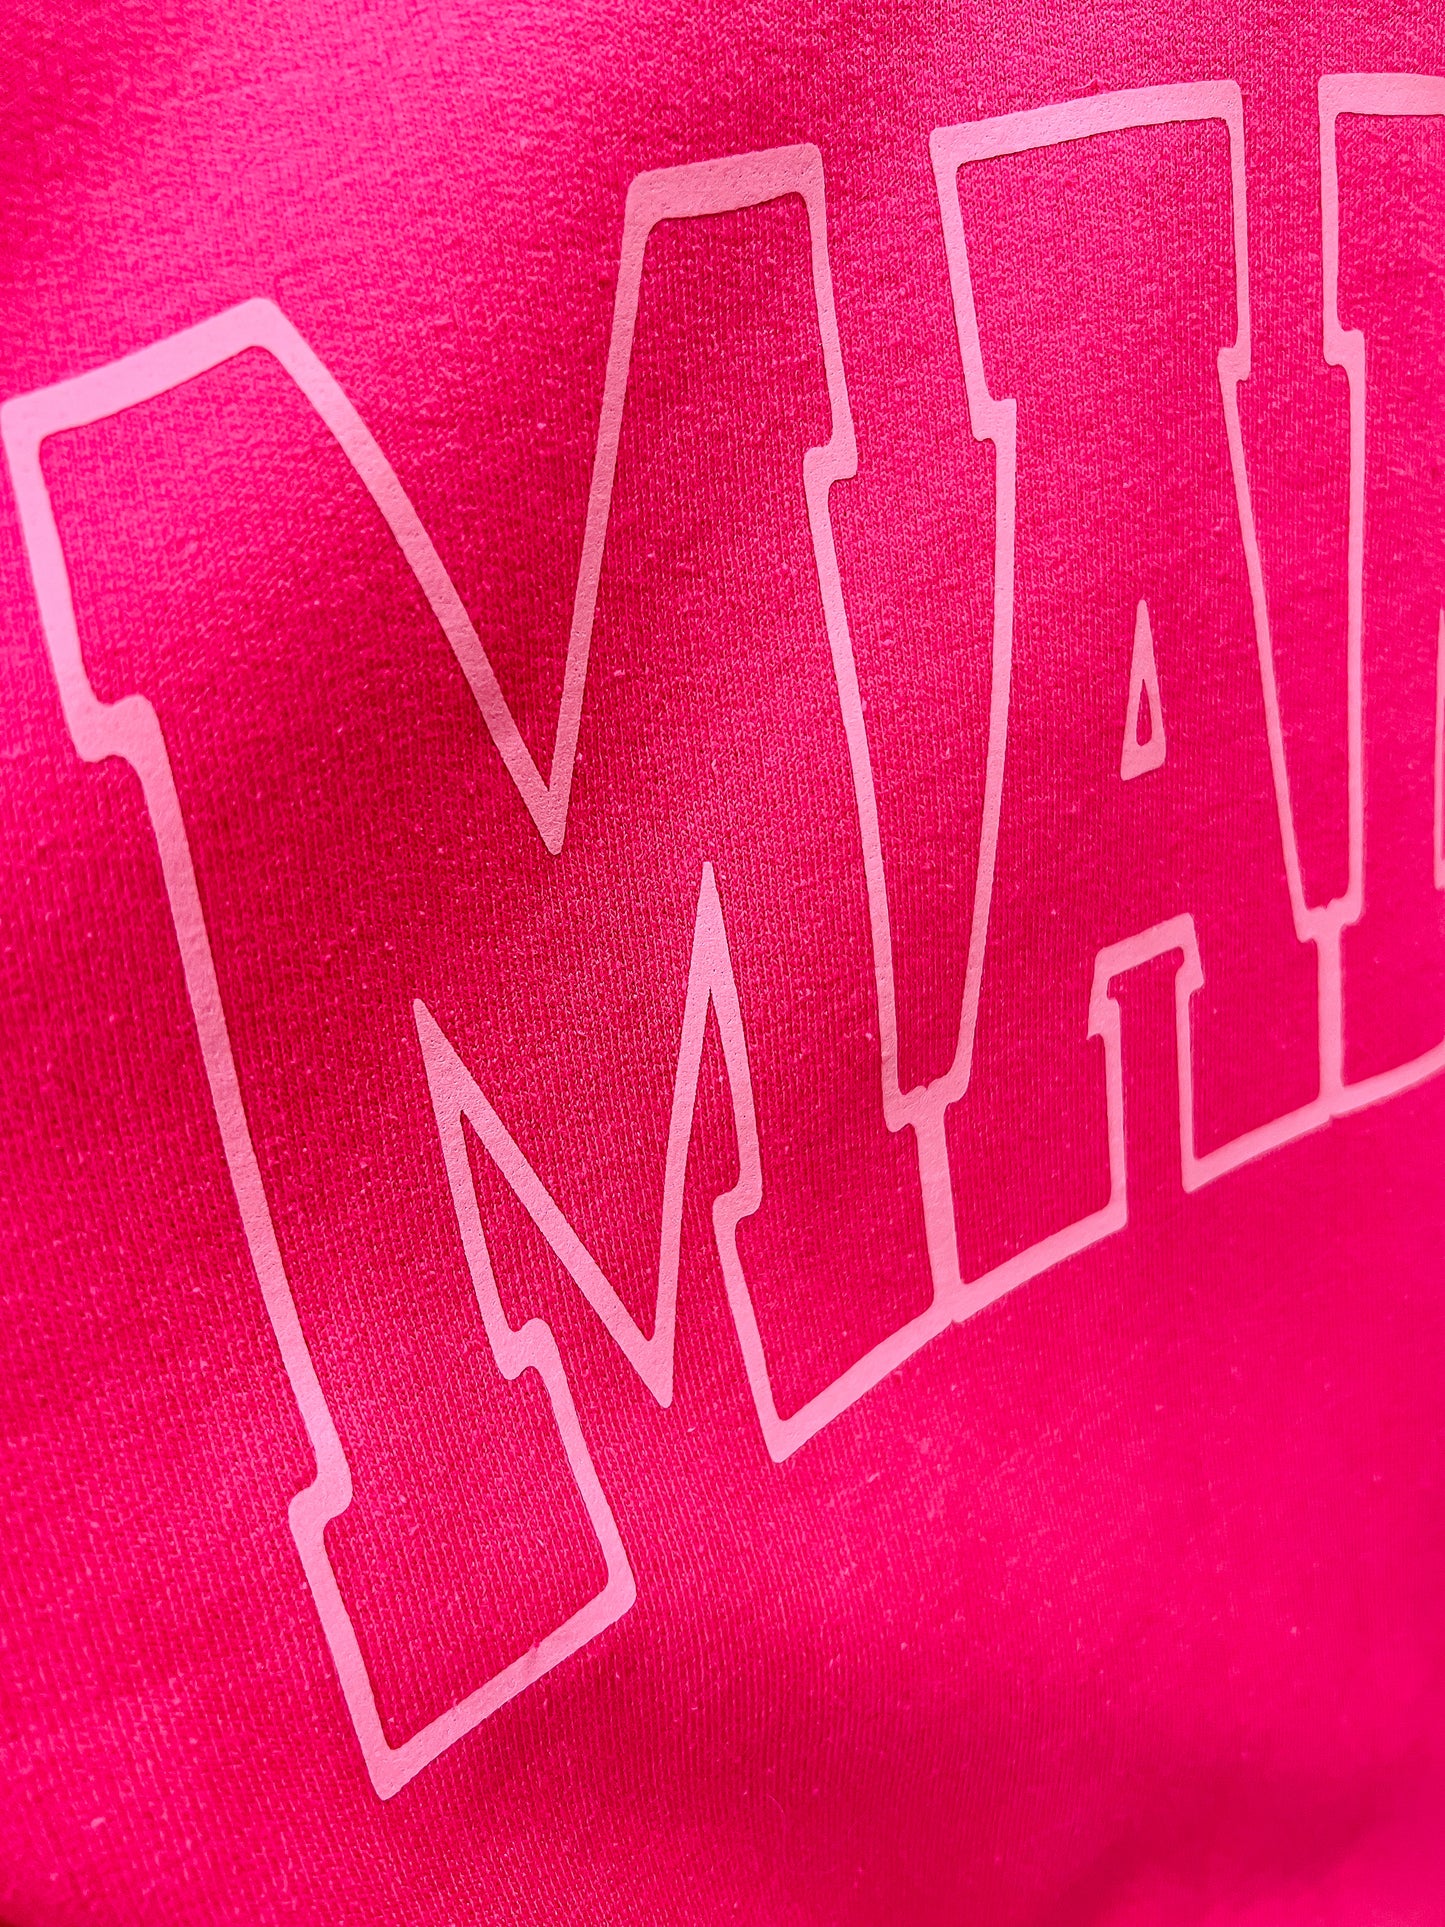 Malibu Mama Sweatshirt